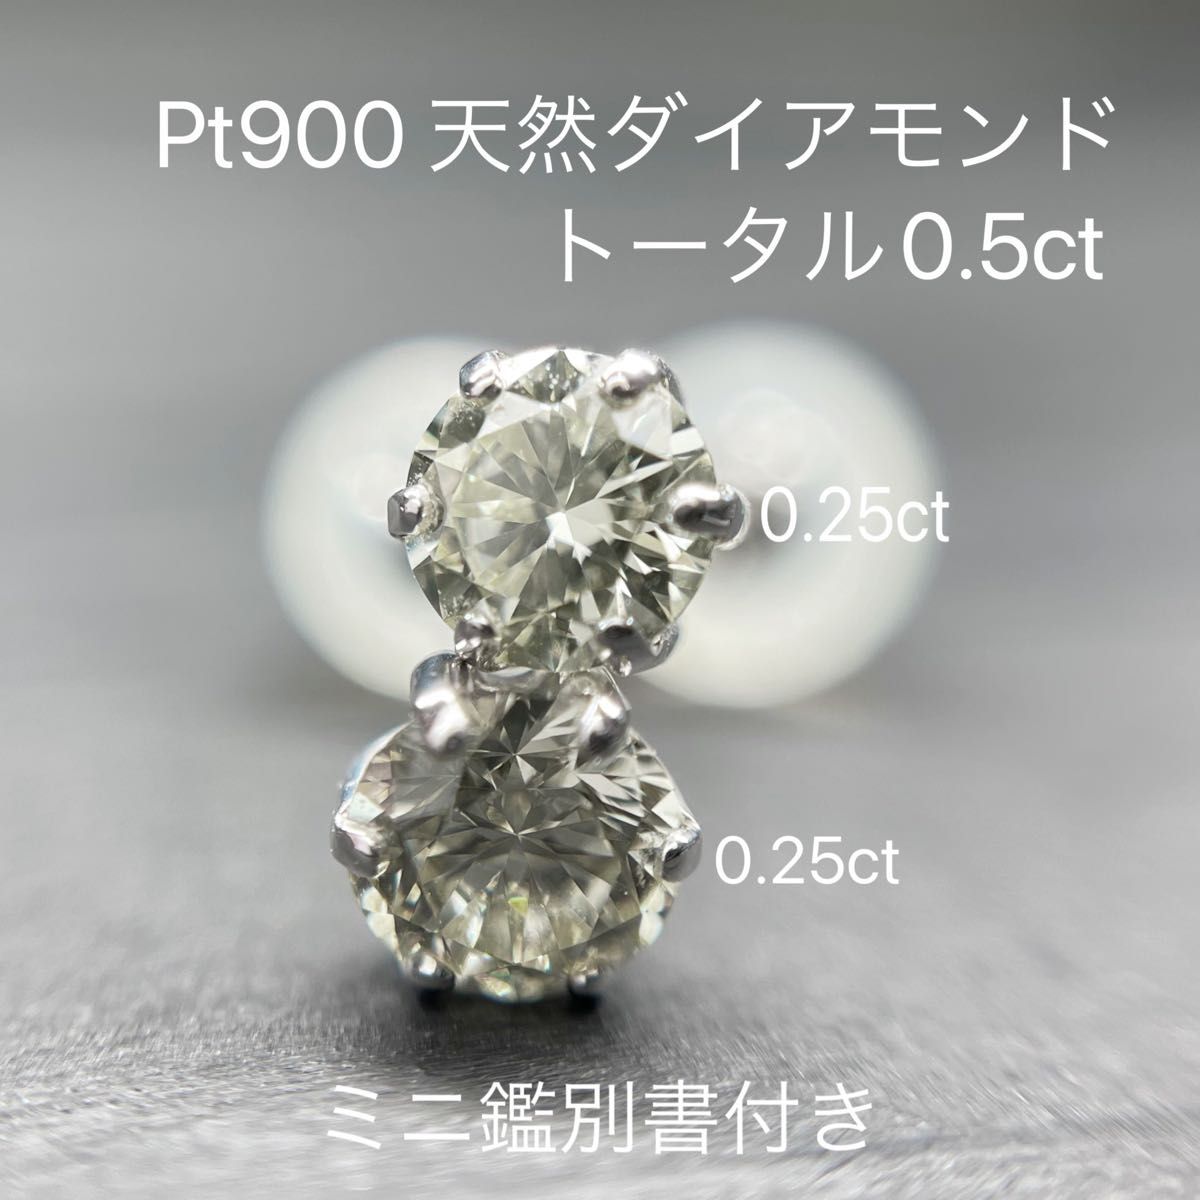 計0.5ct(0.25ct×2) 天然 ダイヤモンド Pt900 ピアスプラチナ-